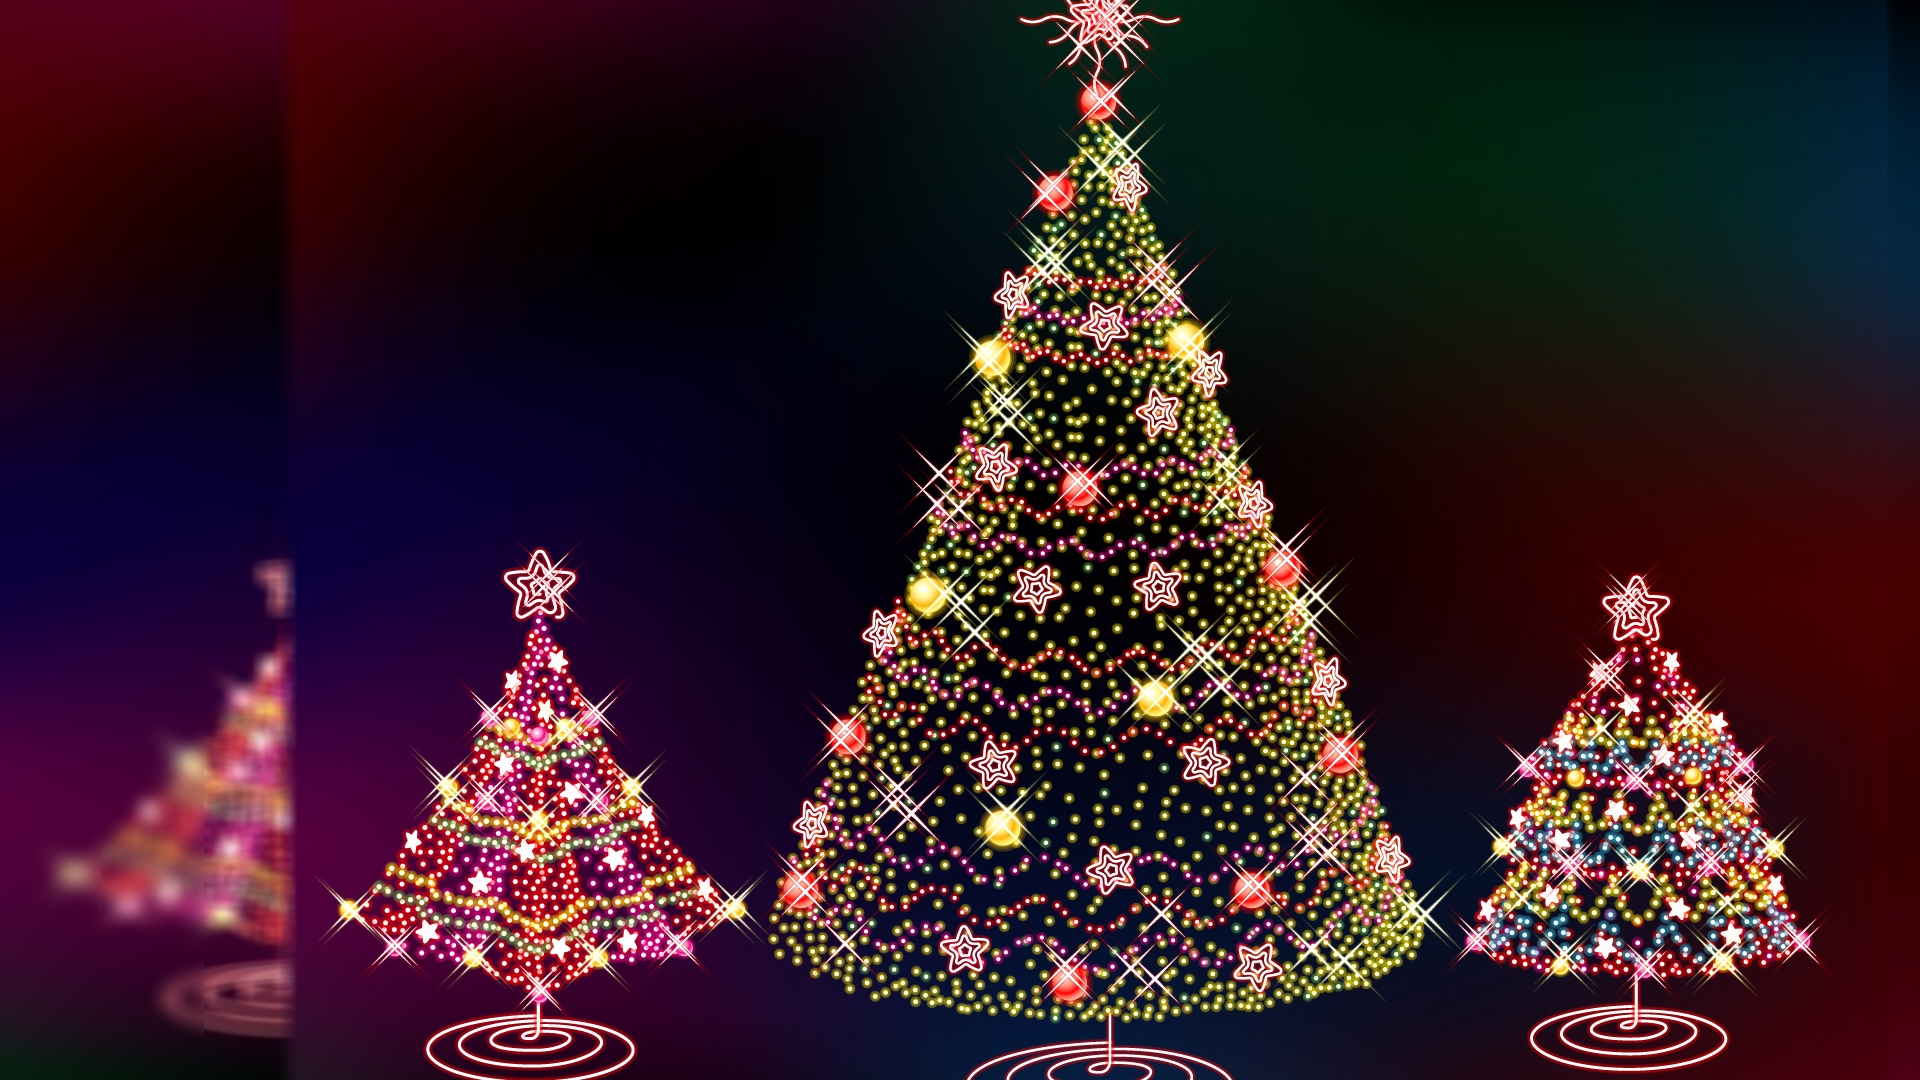 weihnachtstapete,weihnachtsbaum,weihnachtsdekoration,weihnachtsschmuck,baum,weihnachten